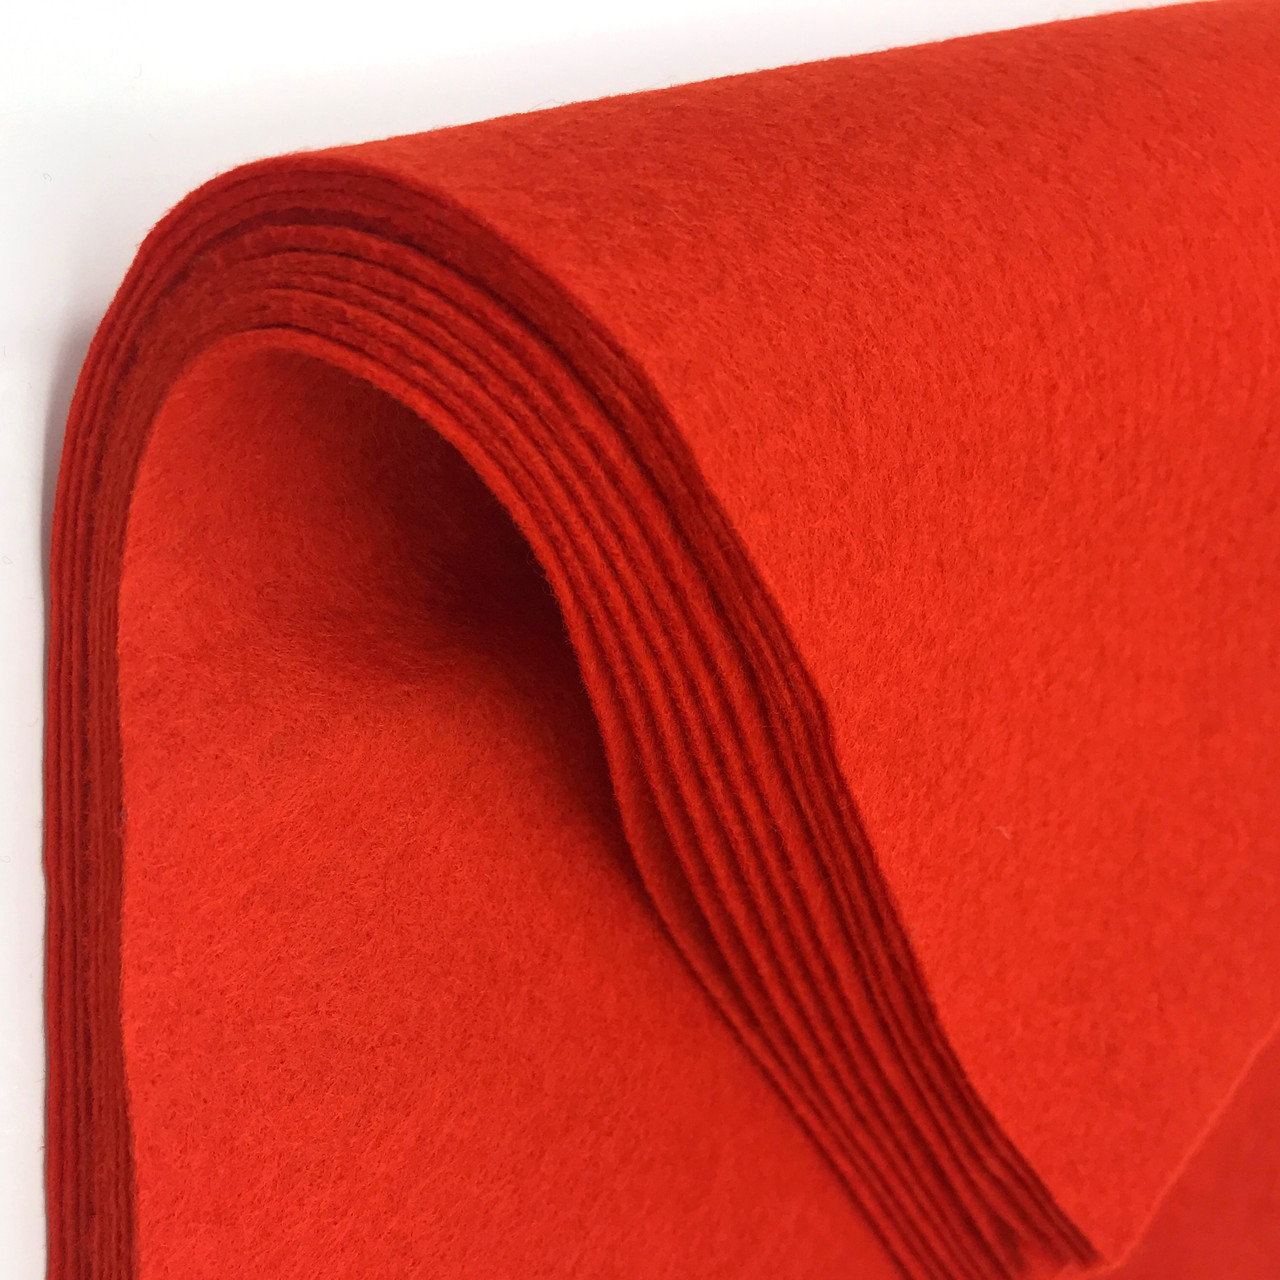 1/2 Yard - 100% Merino Wool Felt - Wool Felt by the yard - 18 X 36- Color  Scarlet Red-4180 - Red Color Wool Felt - Half Yard Wool Felt